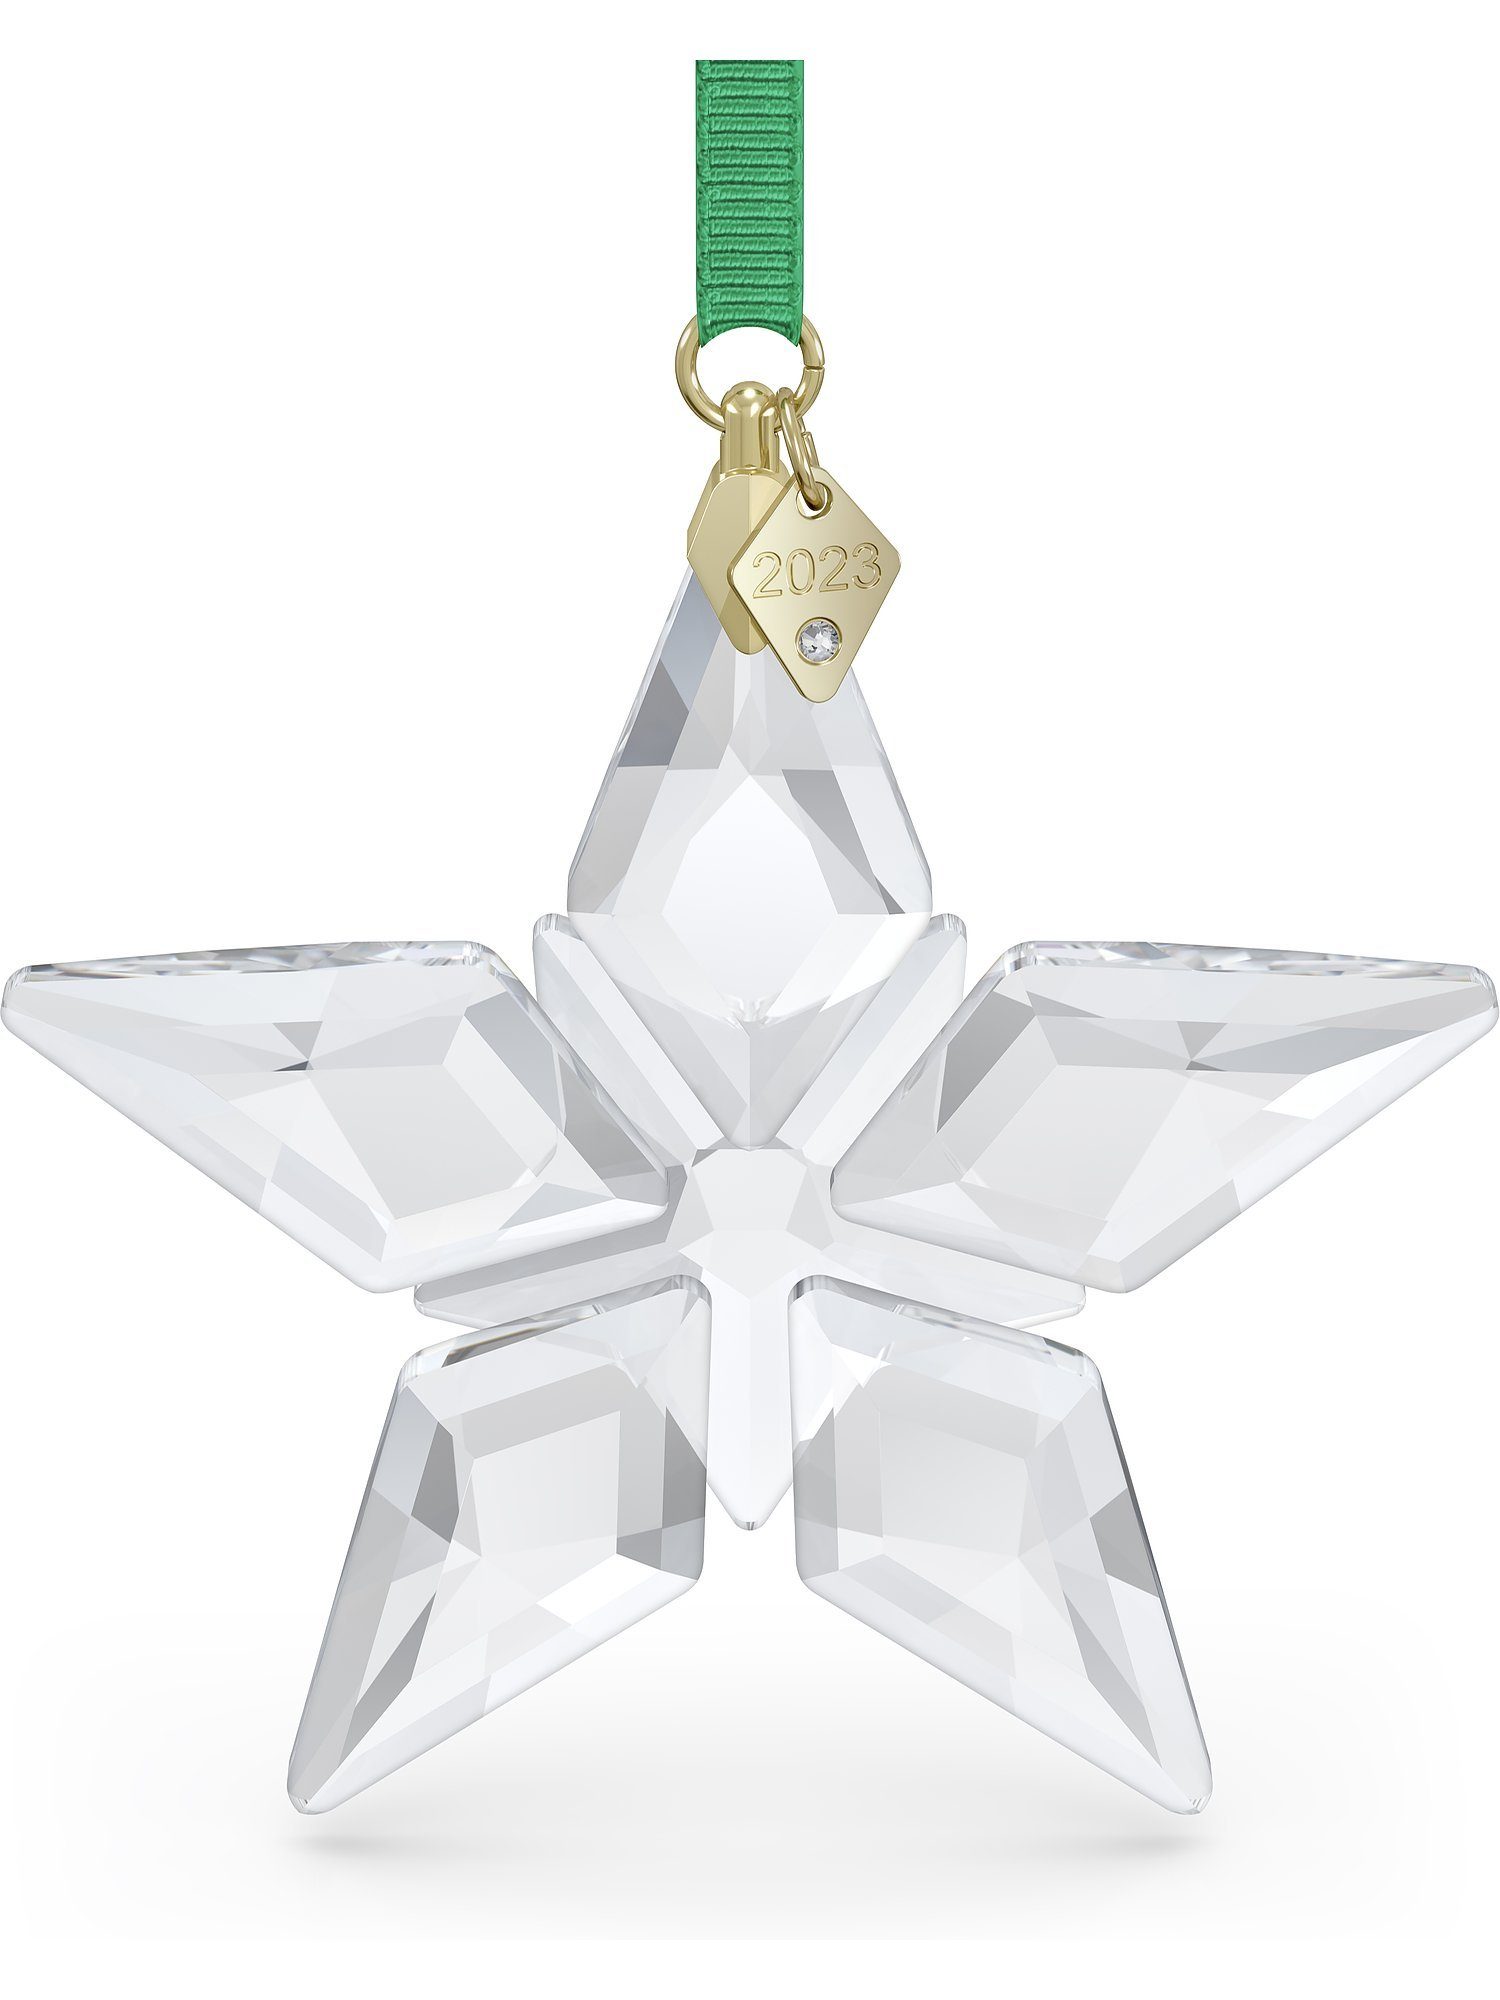 Swarovski Dekohänger ORNAMENT FESTIVE 2023, 5636253, 5648746 (1 St),  Swarovski® Kristall, Glänzendes Dekoobjekt, die perfekte Geschenkidee zu  Weihnachten